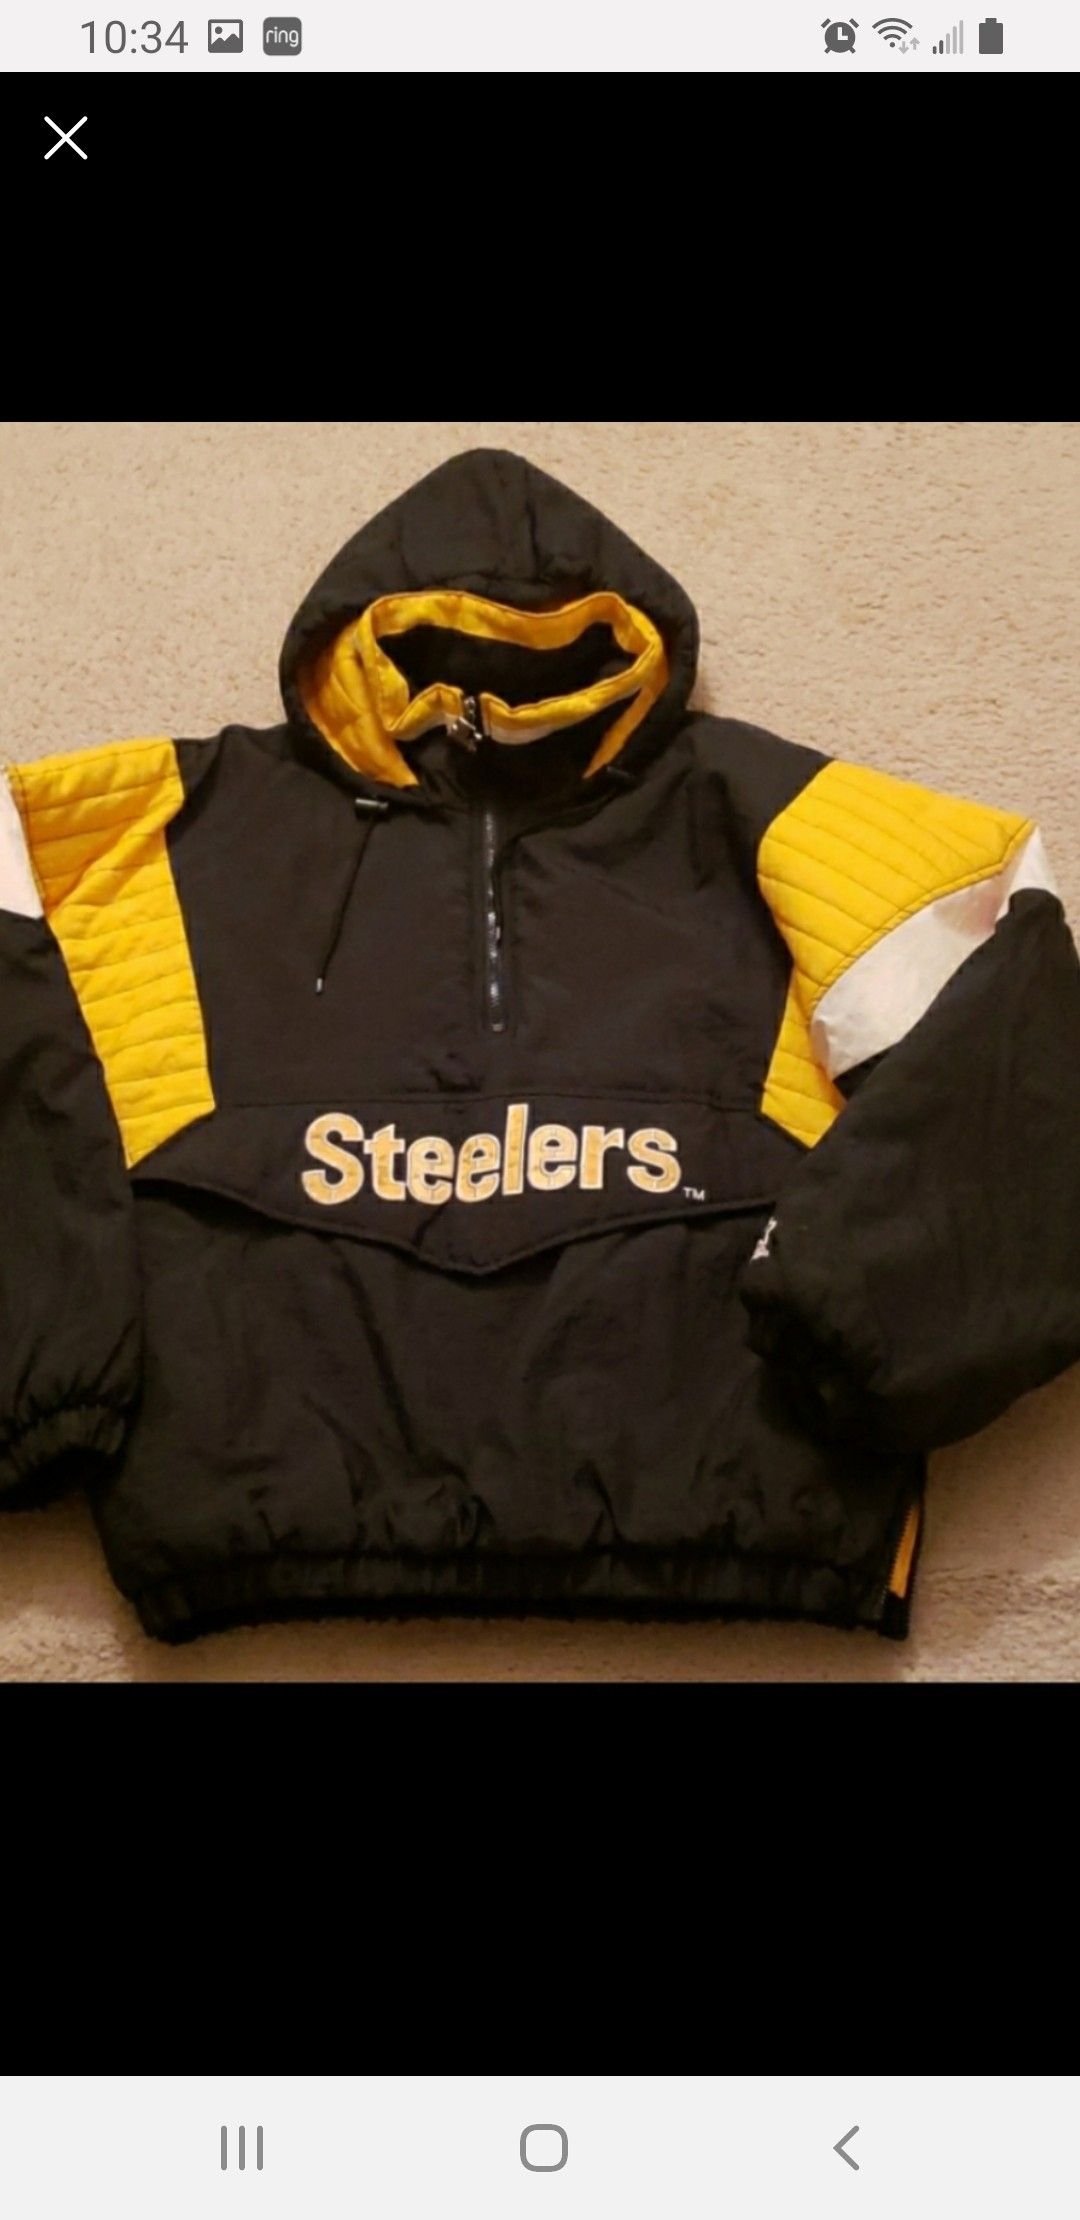 Steelers team jacket